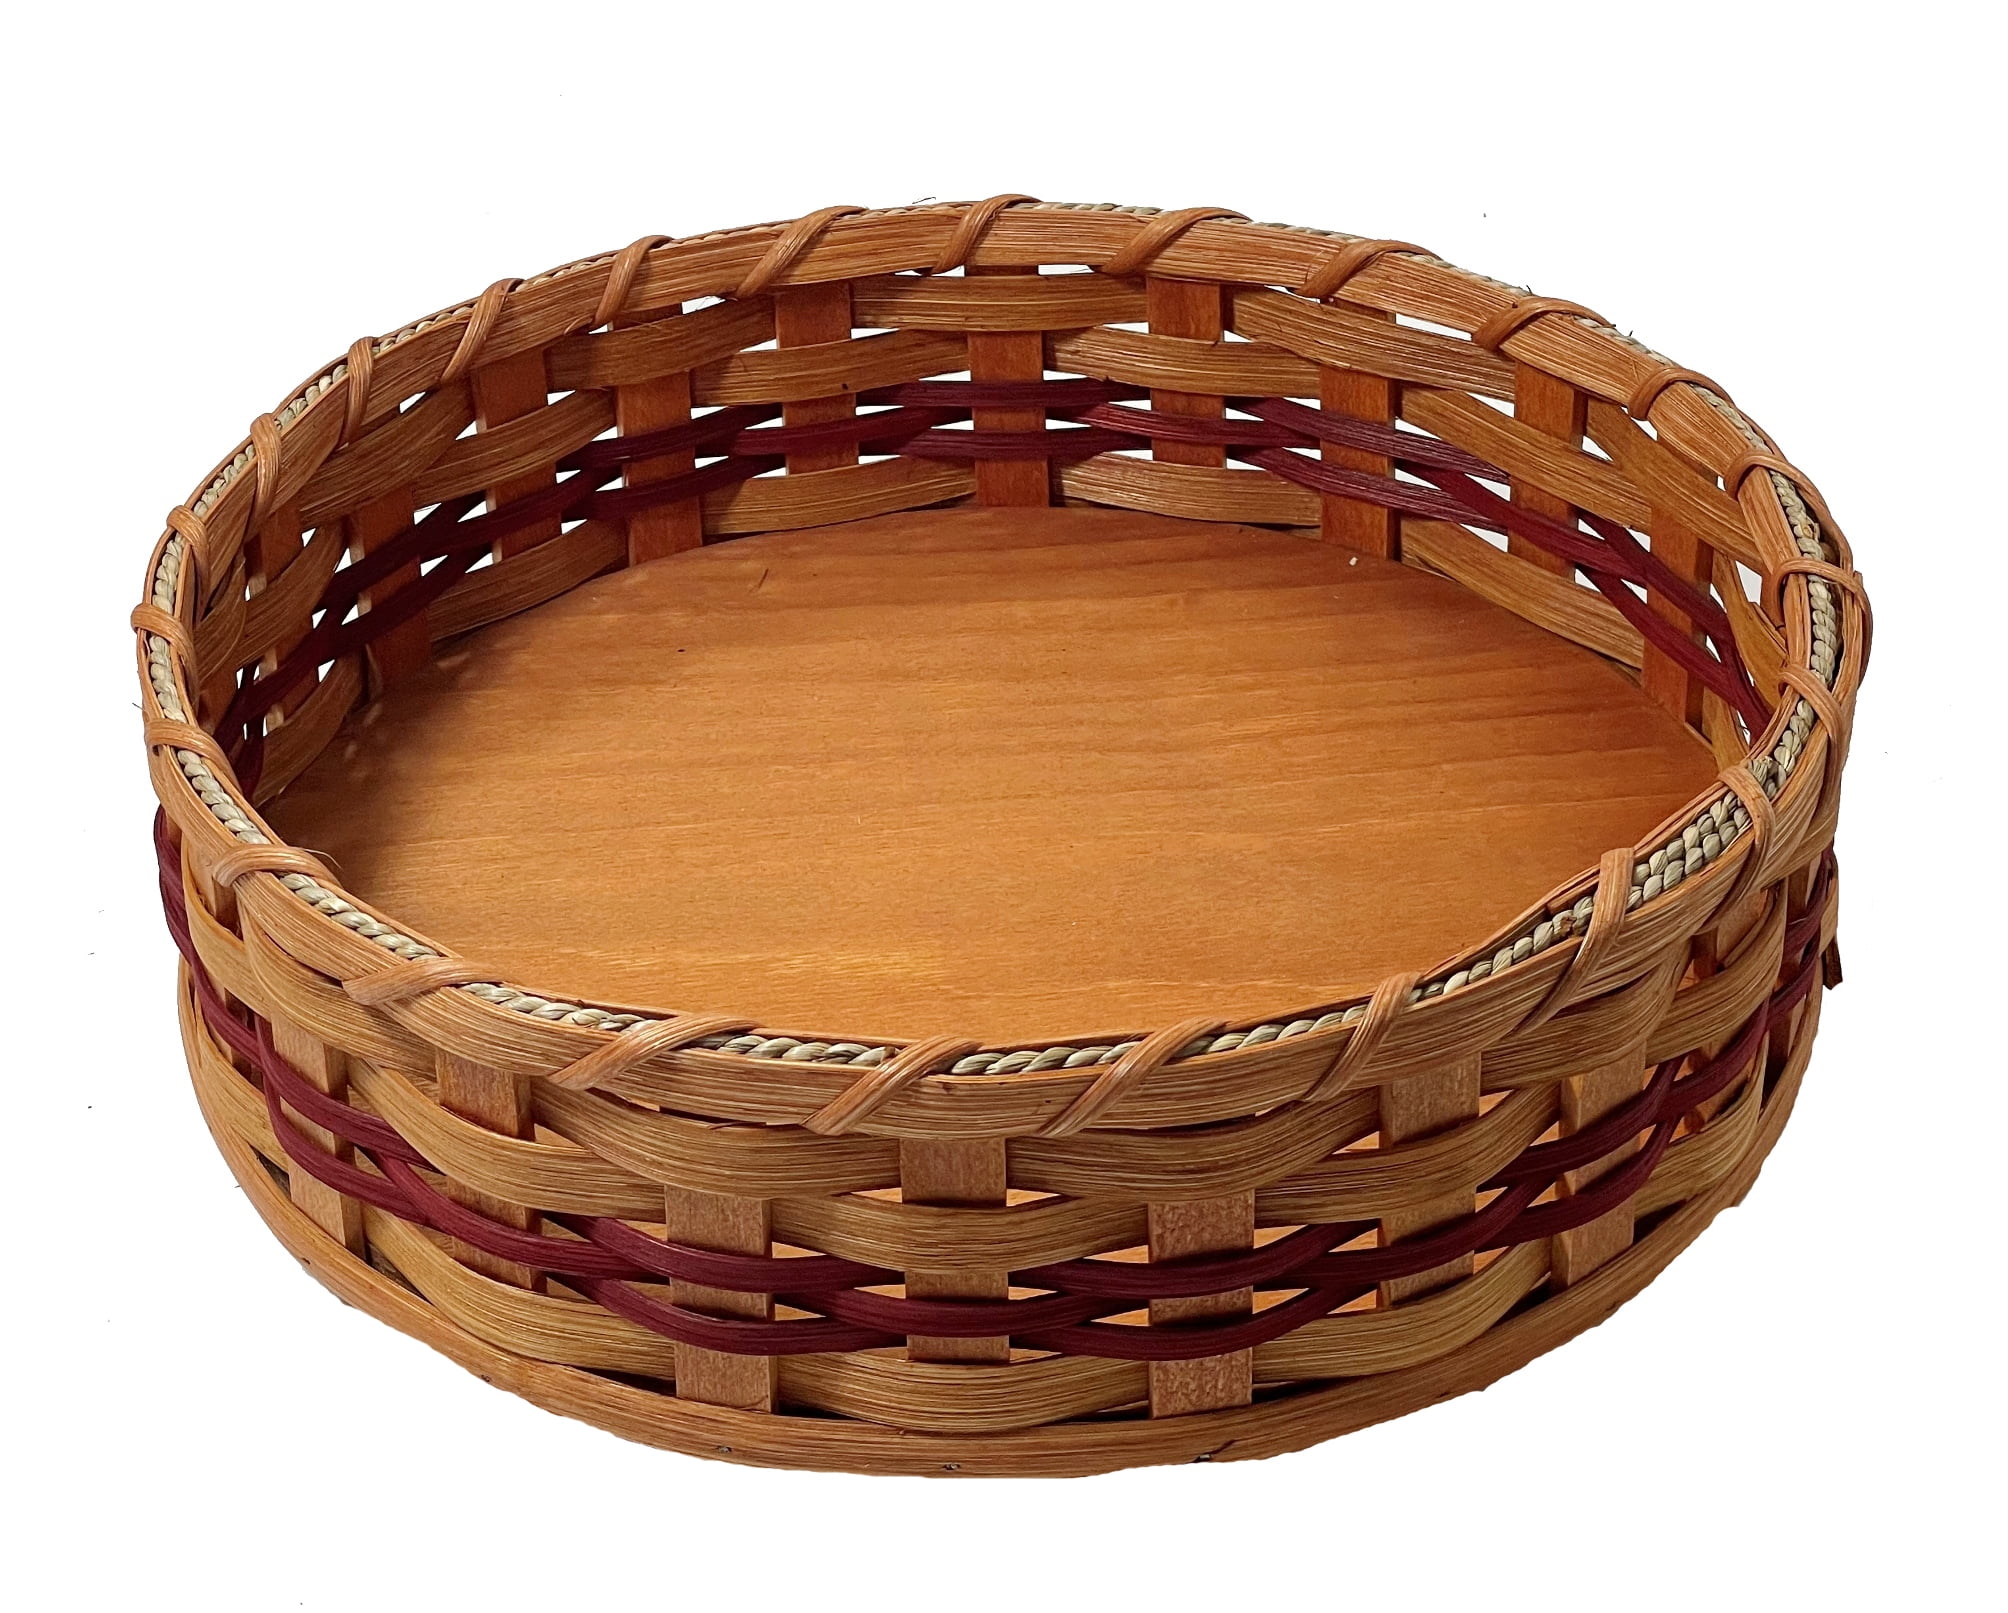 3 Tiered Storage Basket  Amish Woven Wicker Decorative Organizer